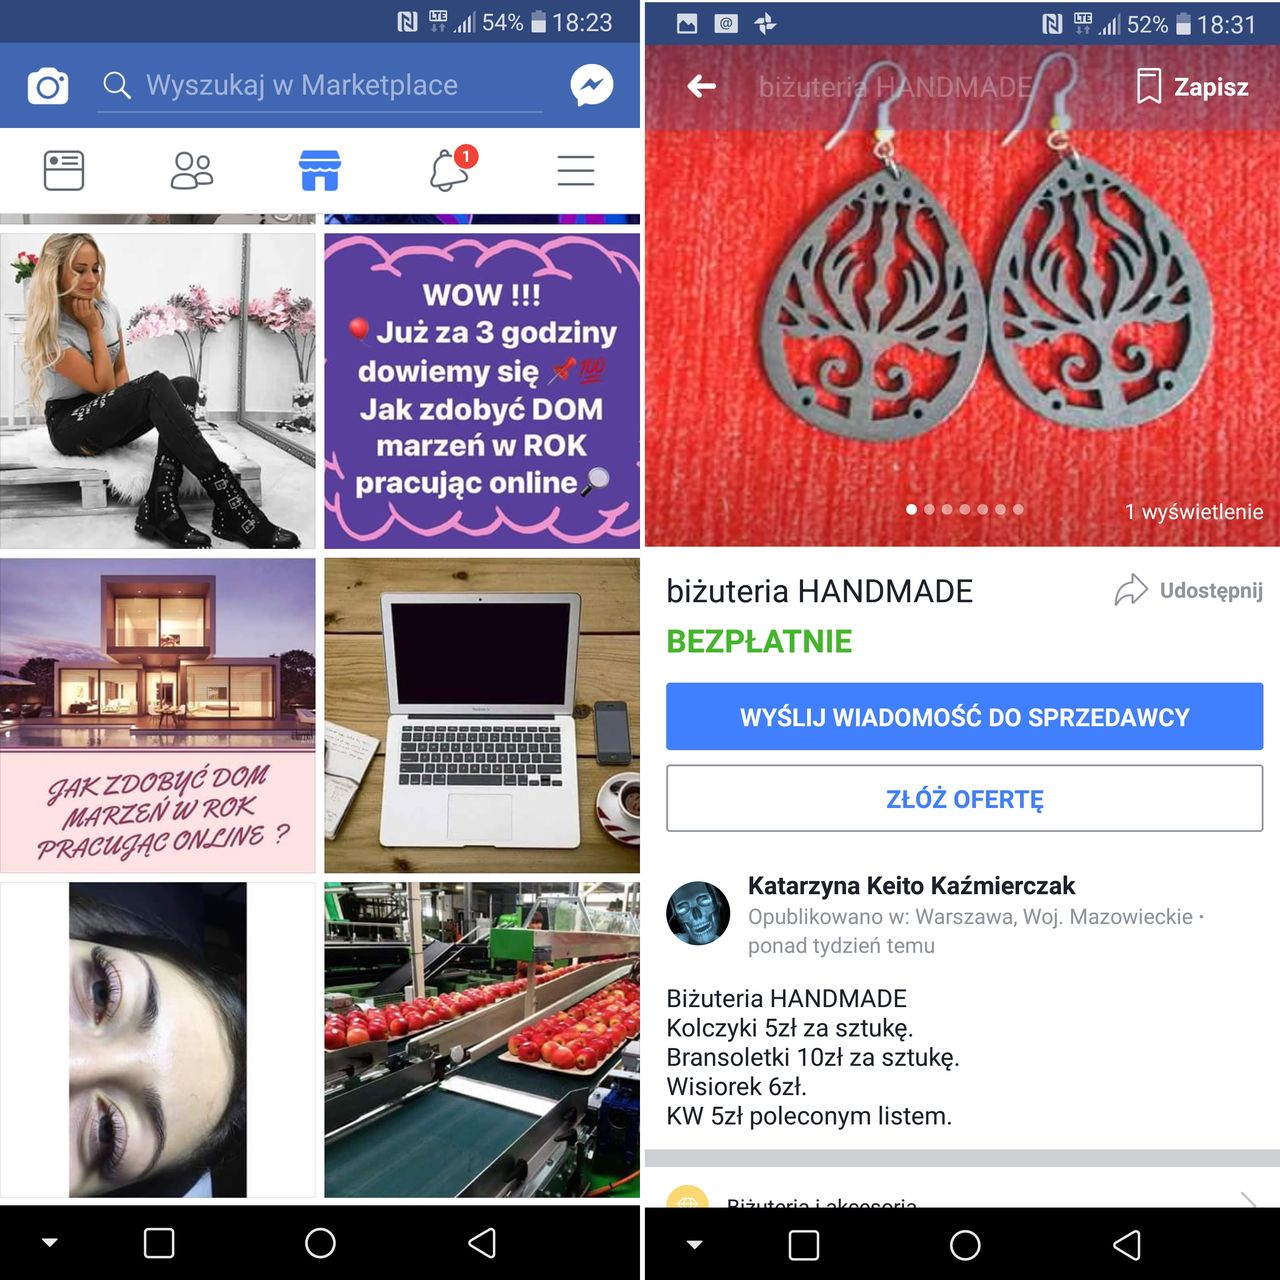 Facebook odpala w Polsce nową usługę. Czy marketplace pogrzebie Olx?